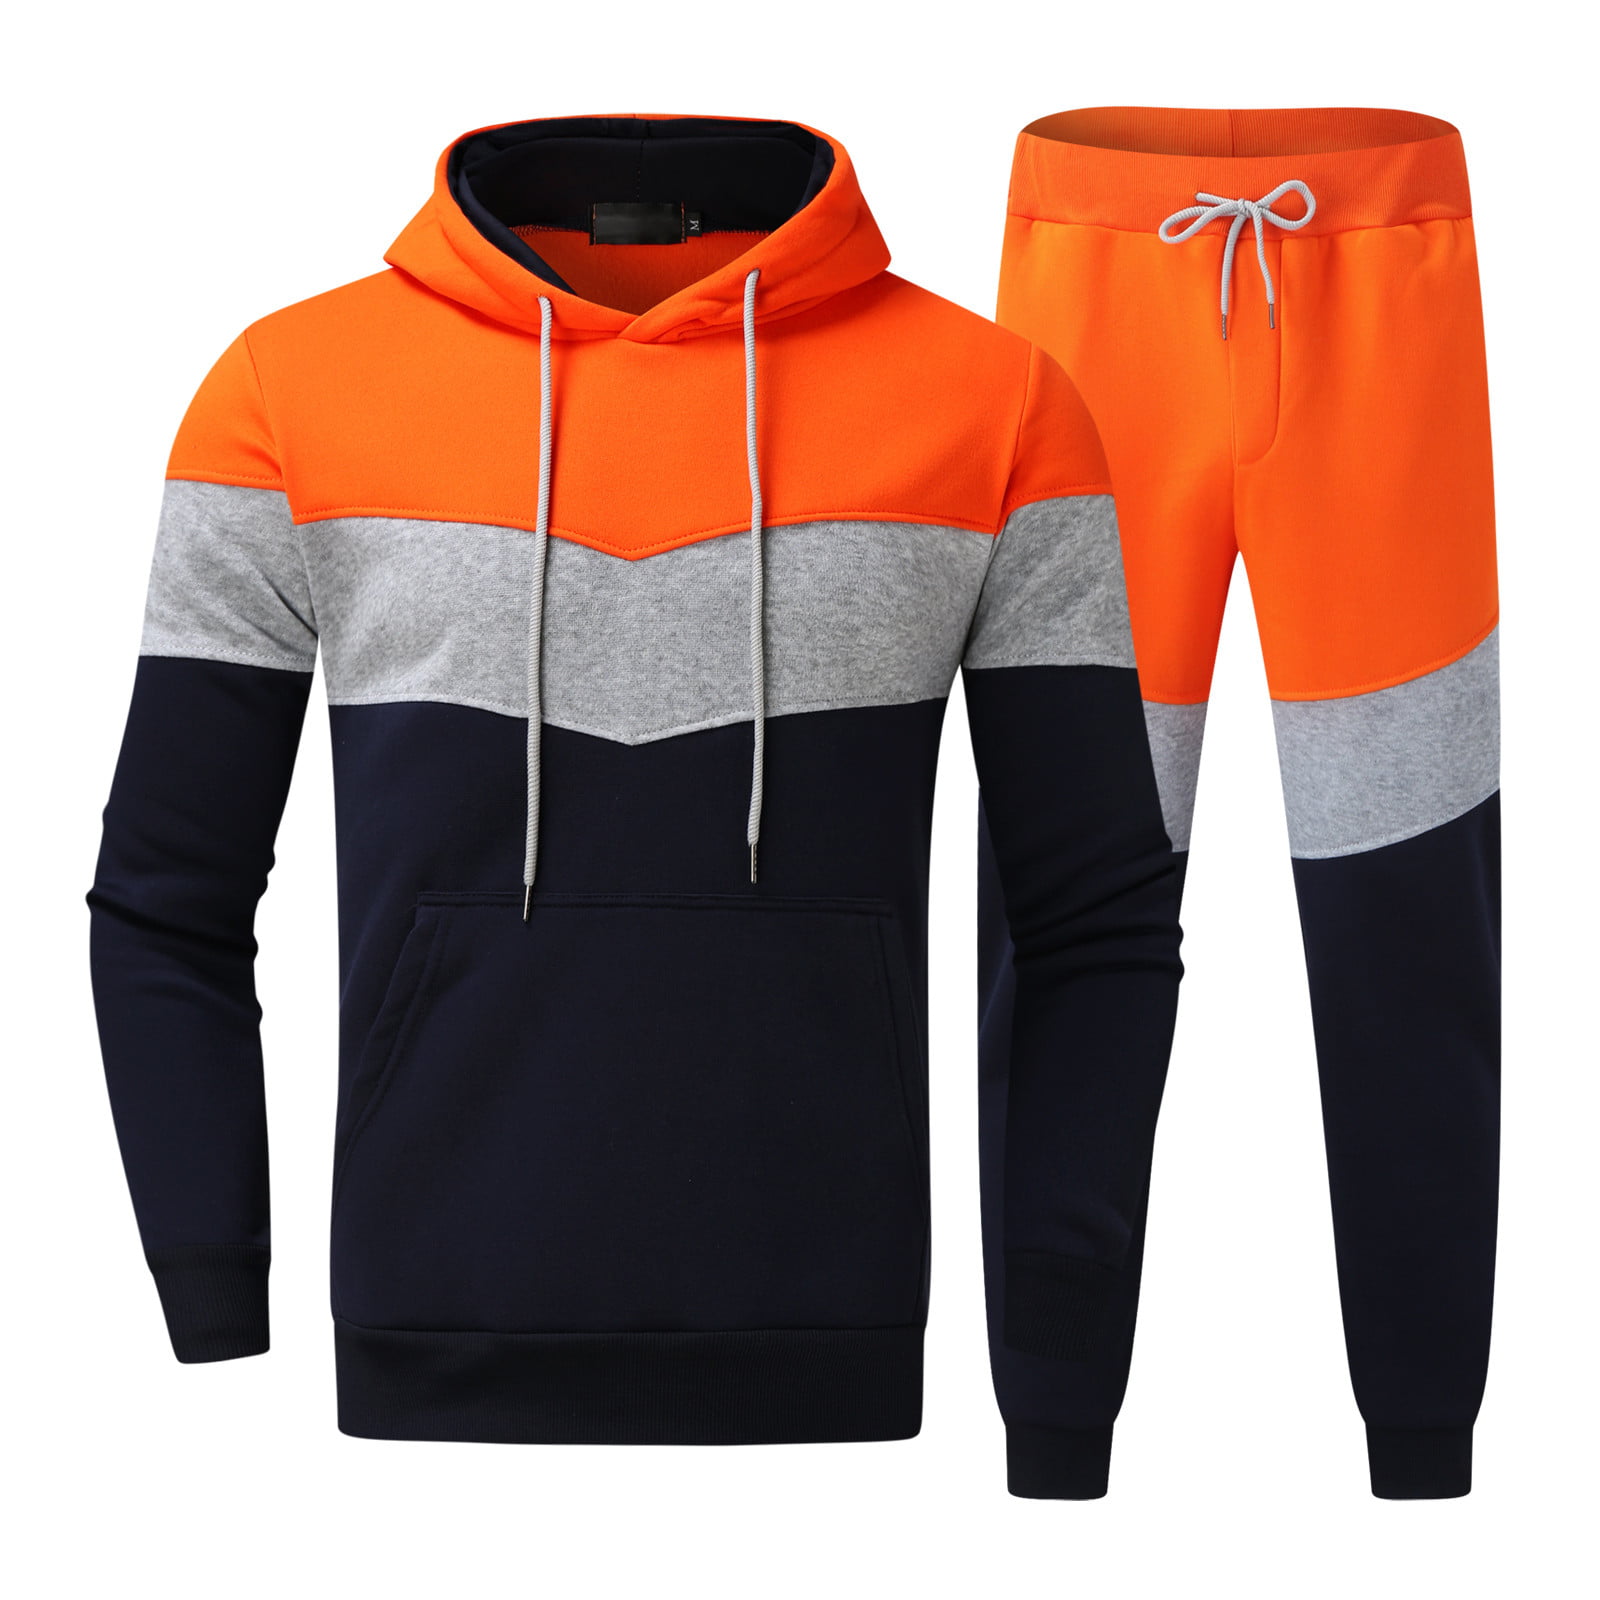 Hurrg Men 2 Pcs Athletic Jogging Sweatshirt and Long Pants Autumn Sweatsuit Outfit Set